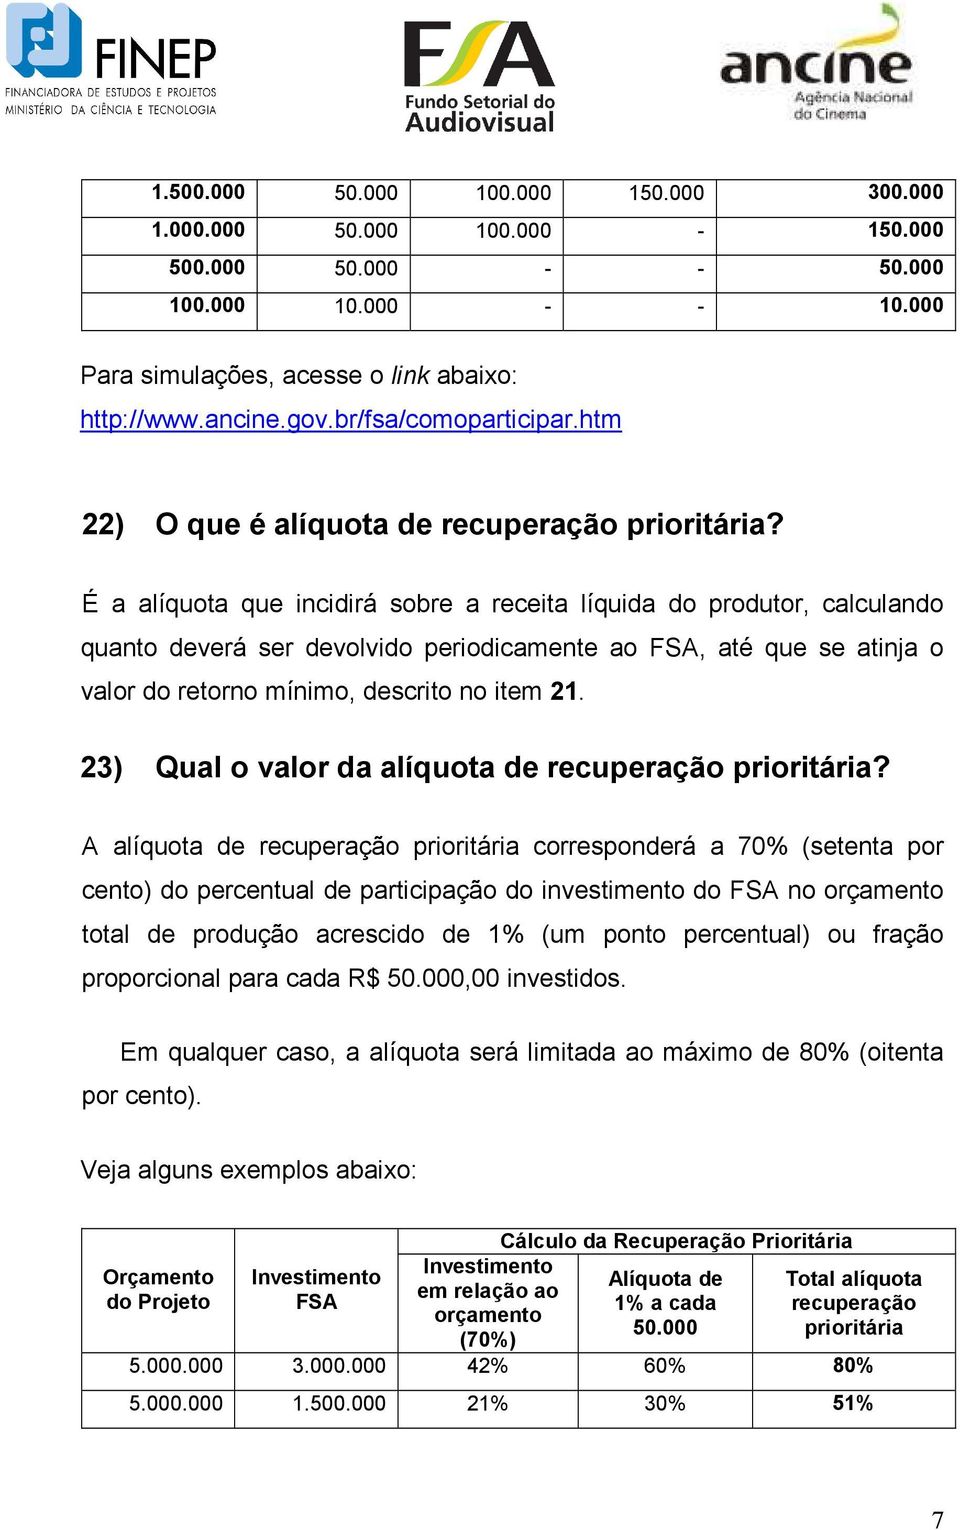 É a alíquota que incidirá sobre a receita líquida do produtor, calculando quanto deverá ser devolvido periodicamente ao FSA, até que se atinja o valor do retorno mínimo, descrito no item 21.